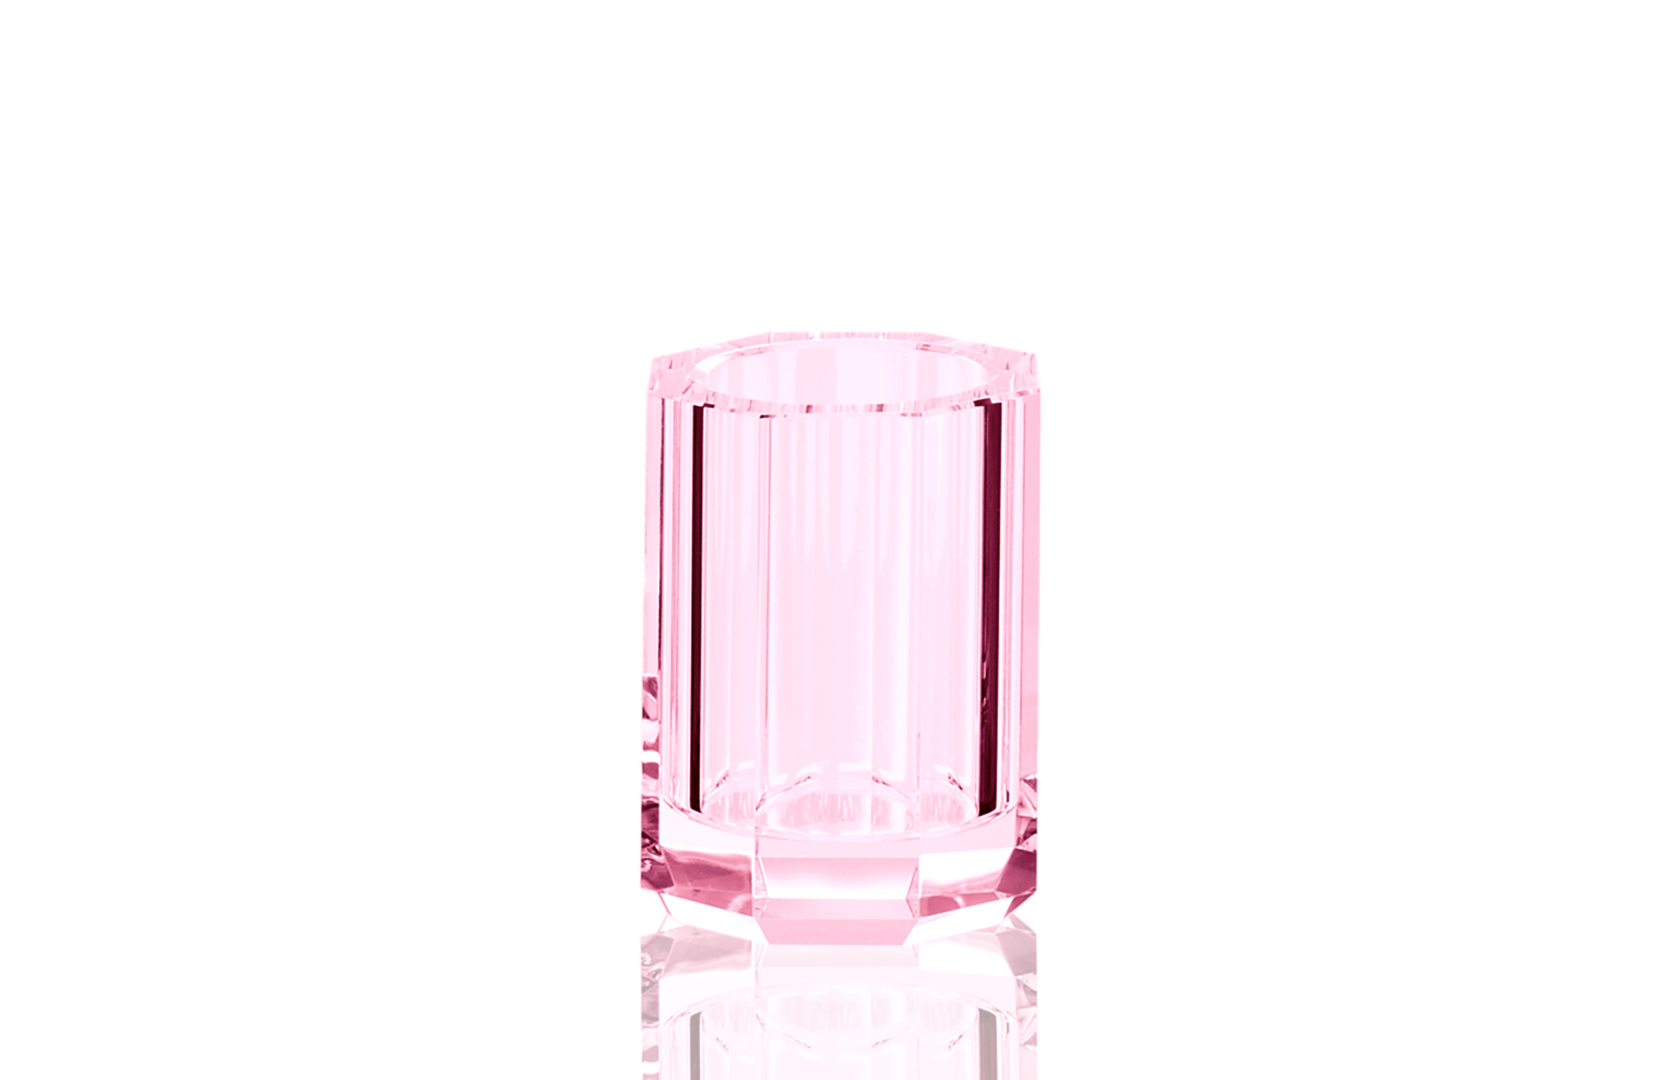 Kristall Tumbler / Toothbrush Holder - Pink